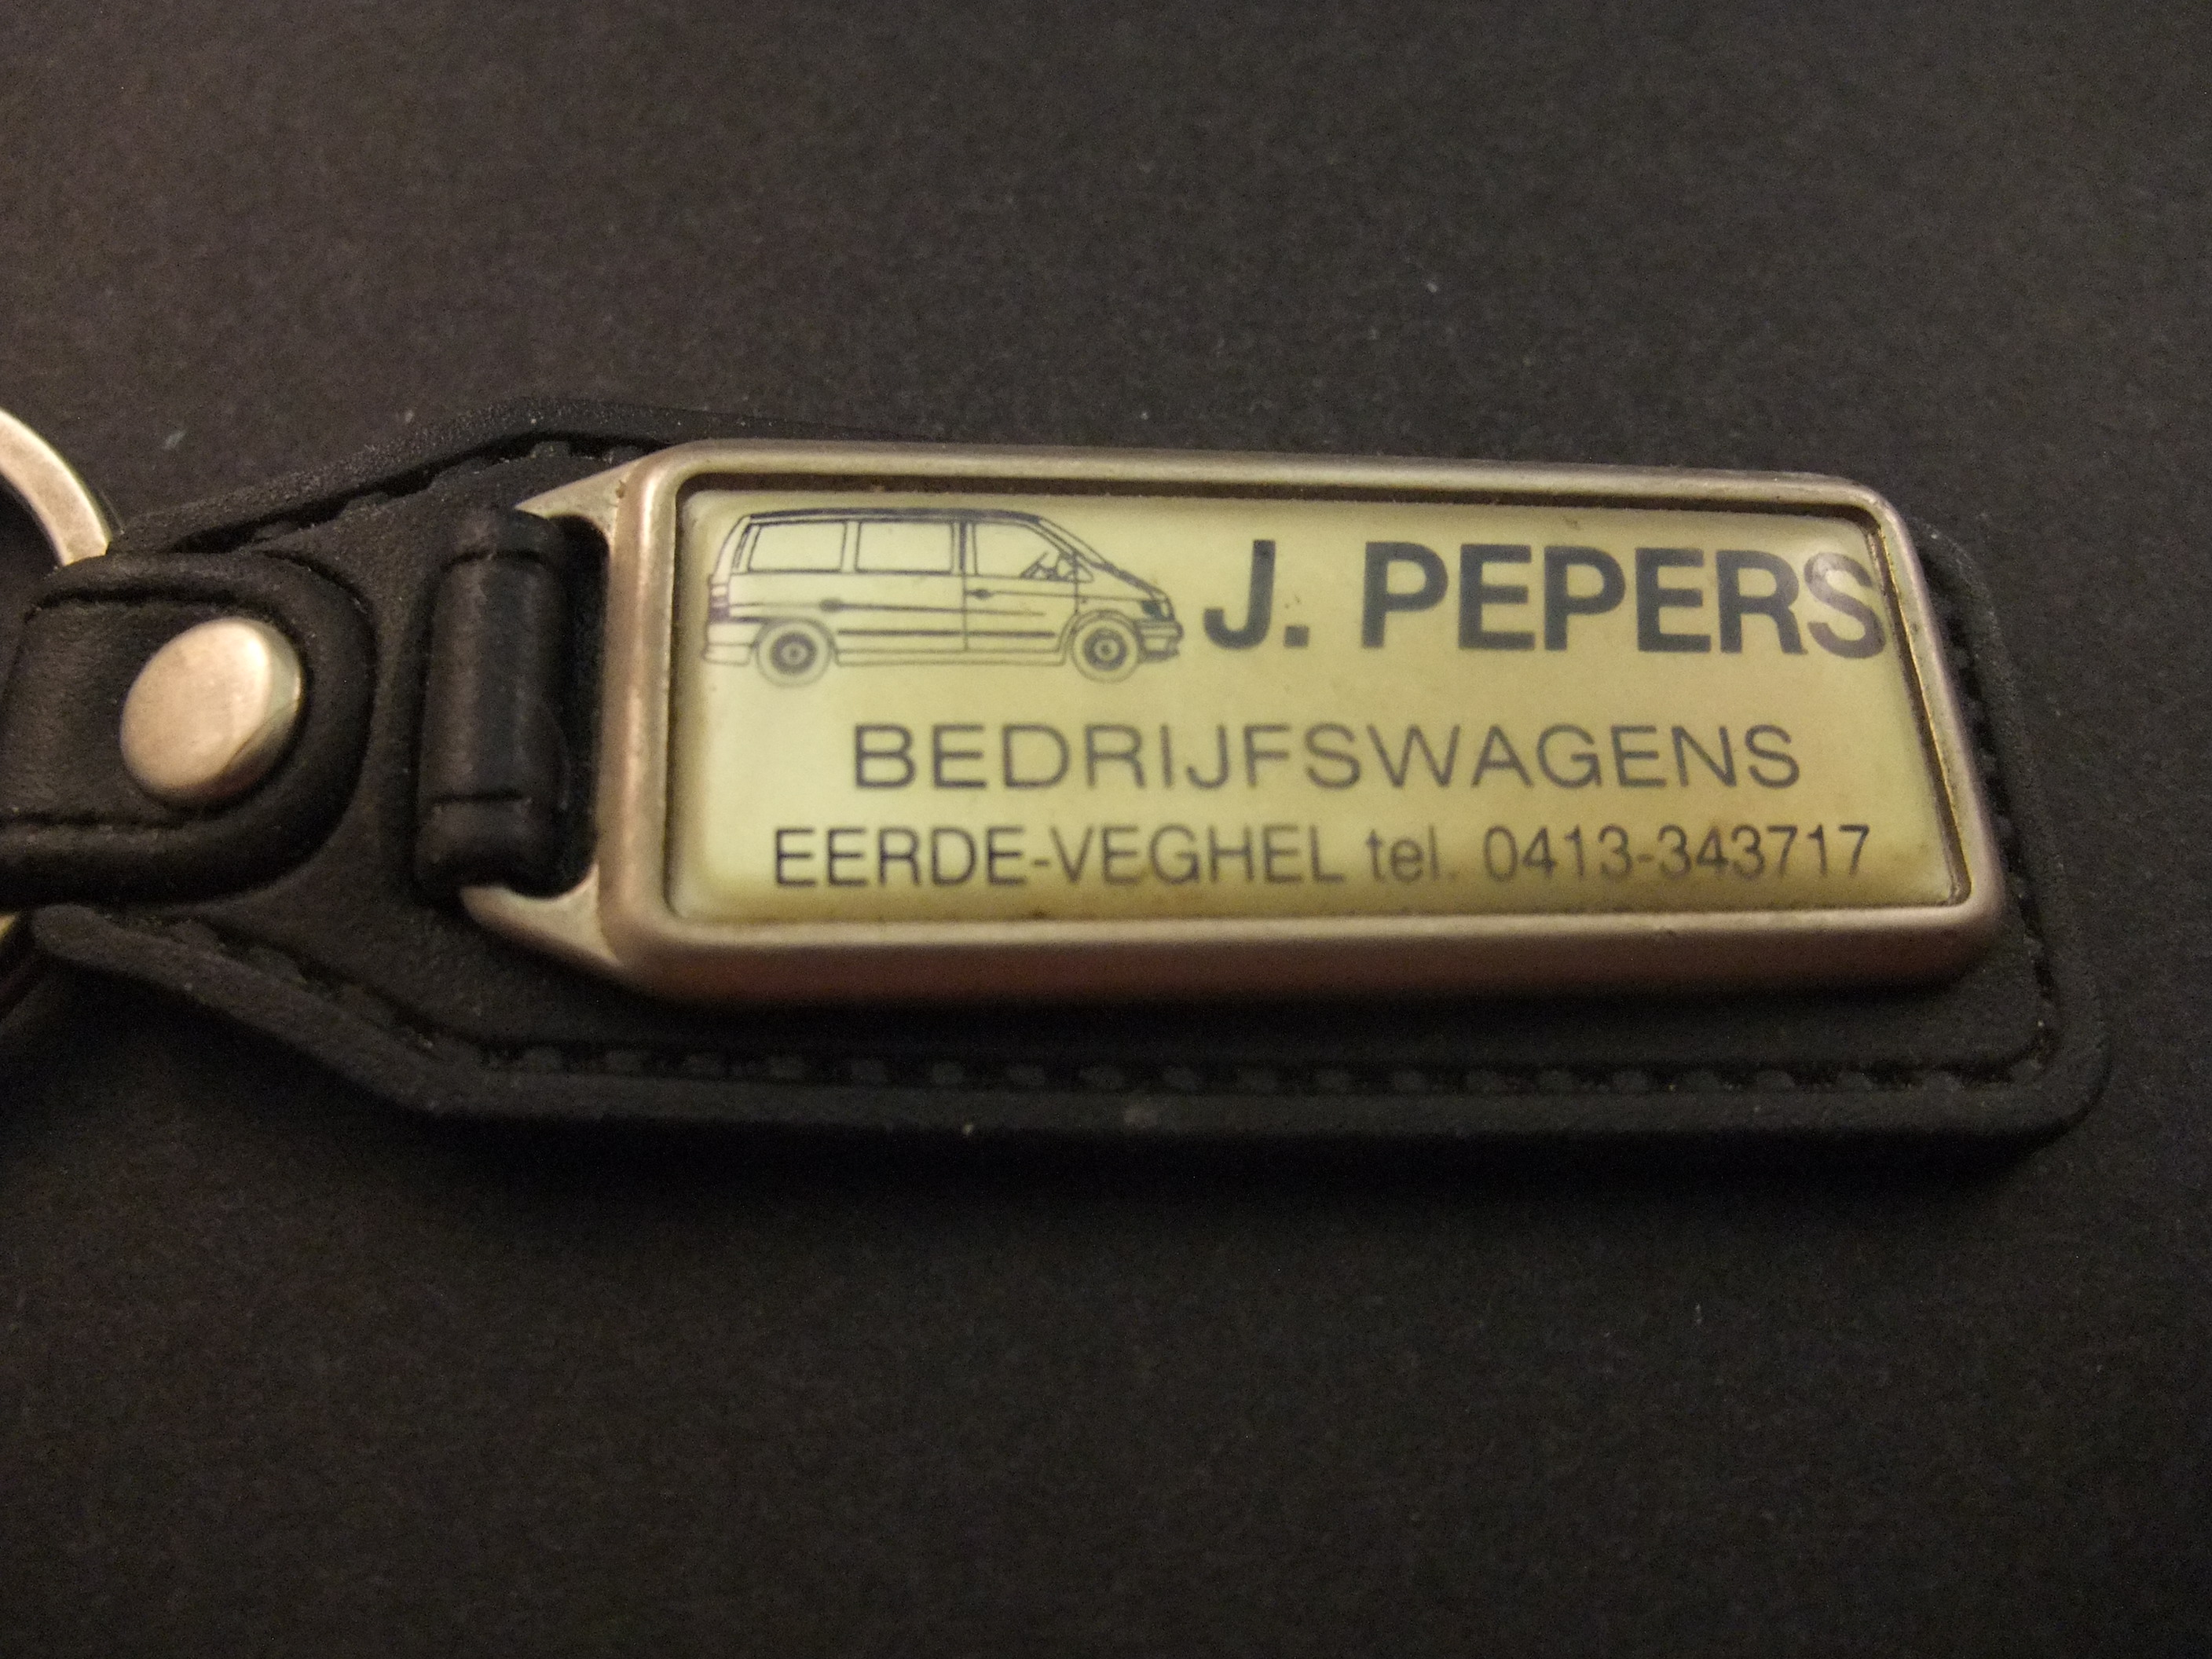 J. Pepers bedrijfswagens Eerde-Veghel sleutelhanger